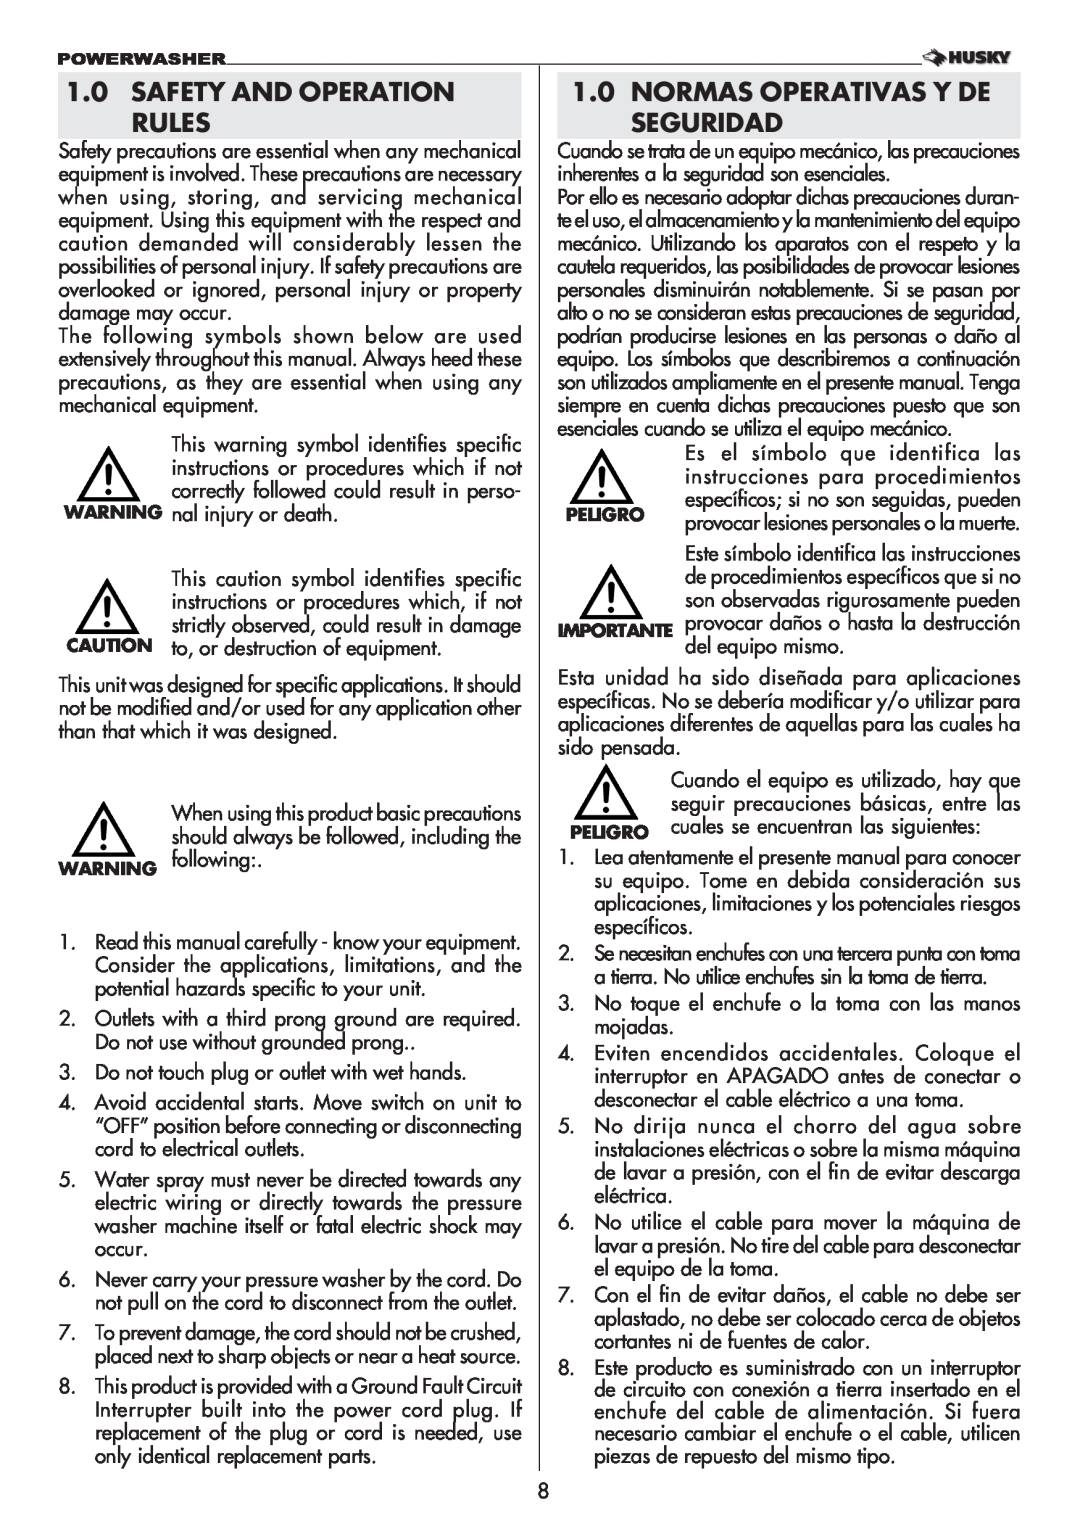 Husky 1750 US manual Safety And Operation Rules, Normas Operativas Y De Seguridad 